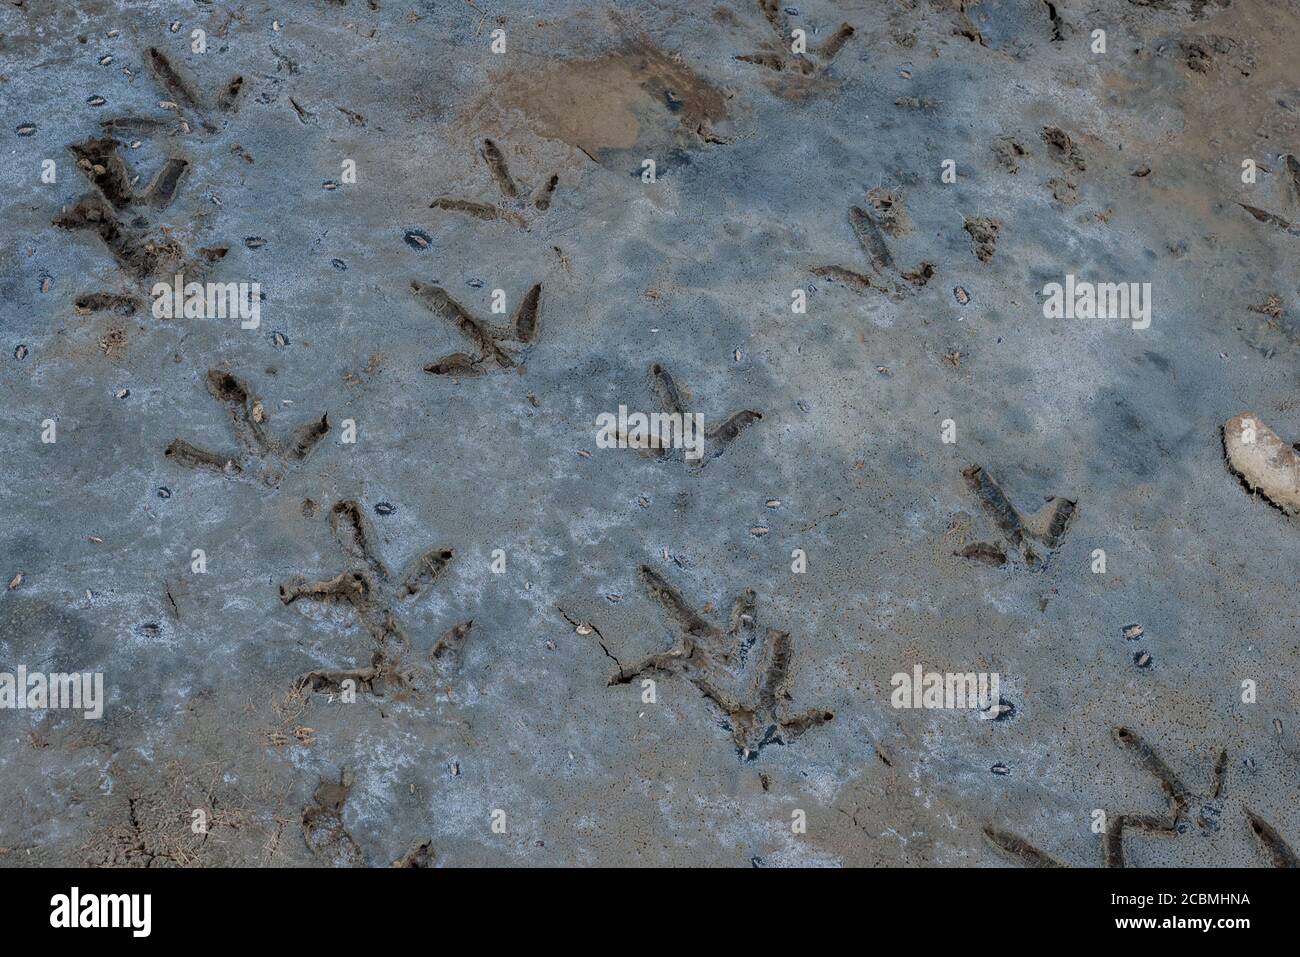 Les empreintes d'un oiseau à gué probablement un aigrette dans un marais salé dans le parc national de China Camp à San Rafael, Californie. Banque D'Images